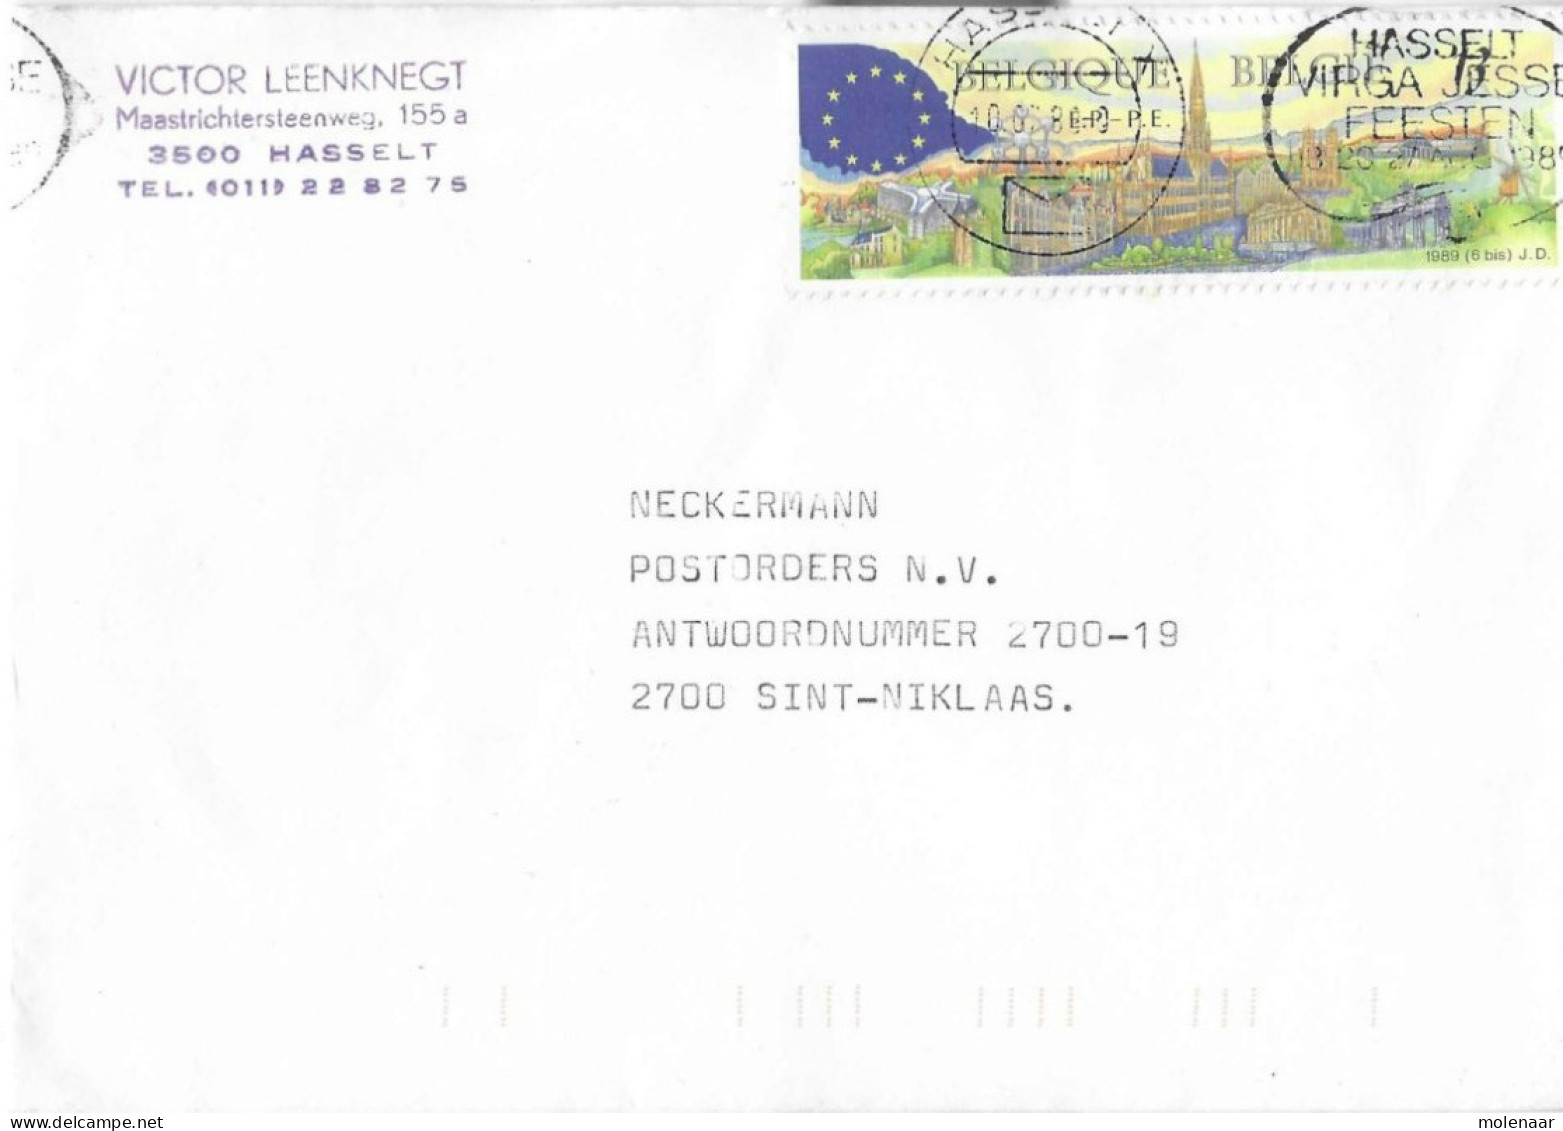 Postzegels > Europa > België > 1951-... > 1981-1990 > Brief Met 1 Postzegel (17038) - Covers & Documents